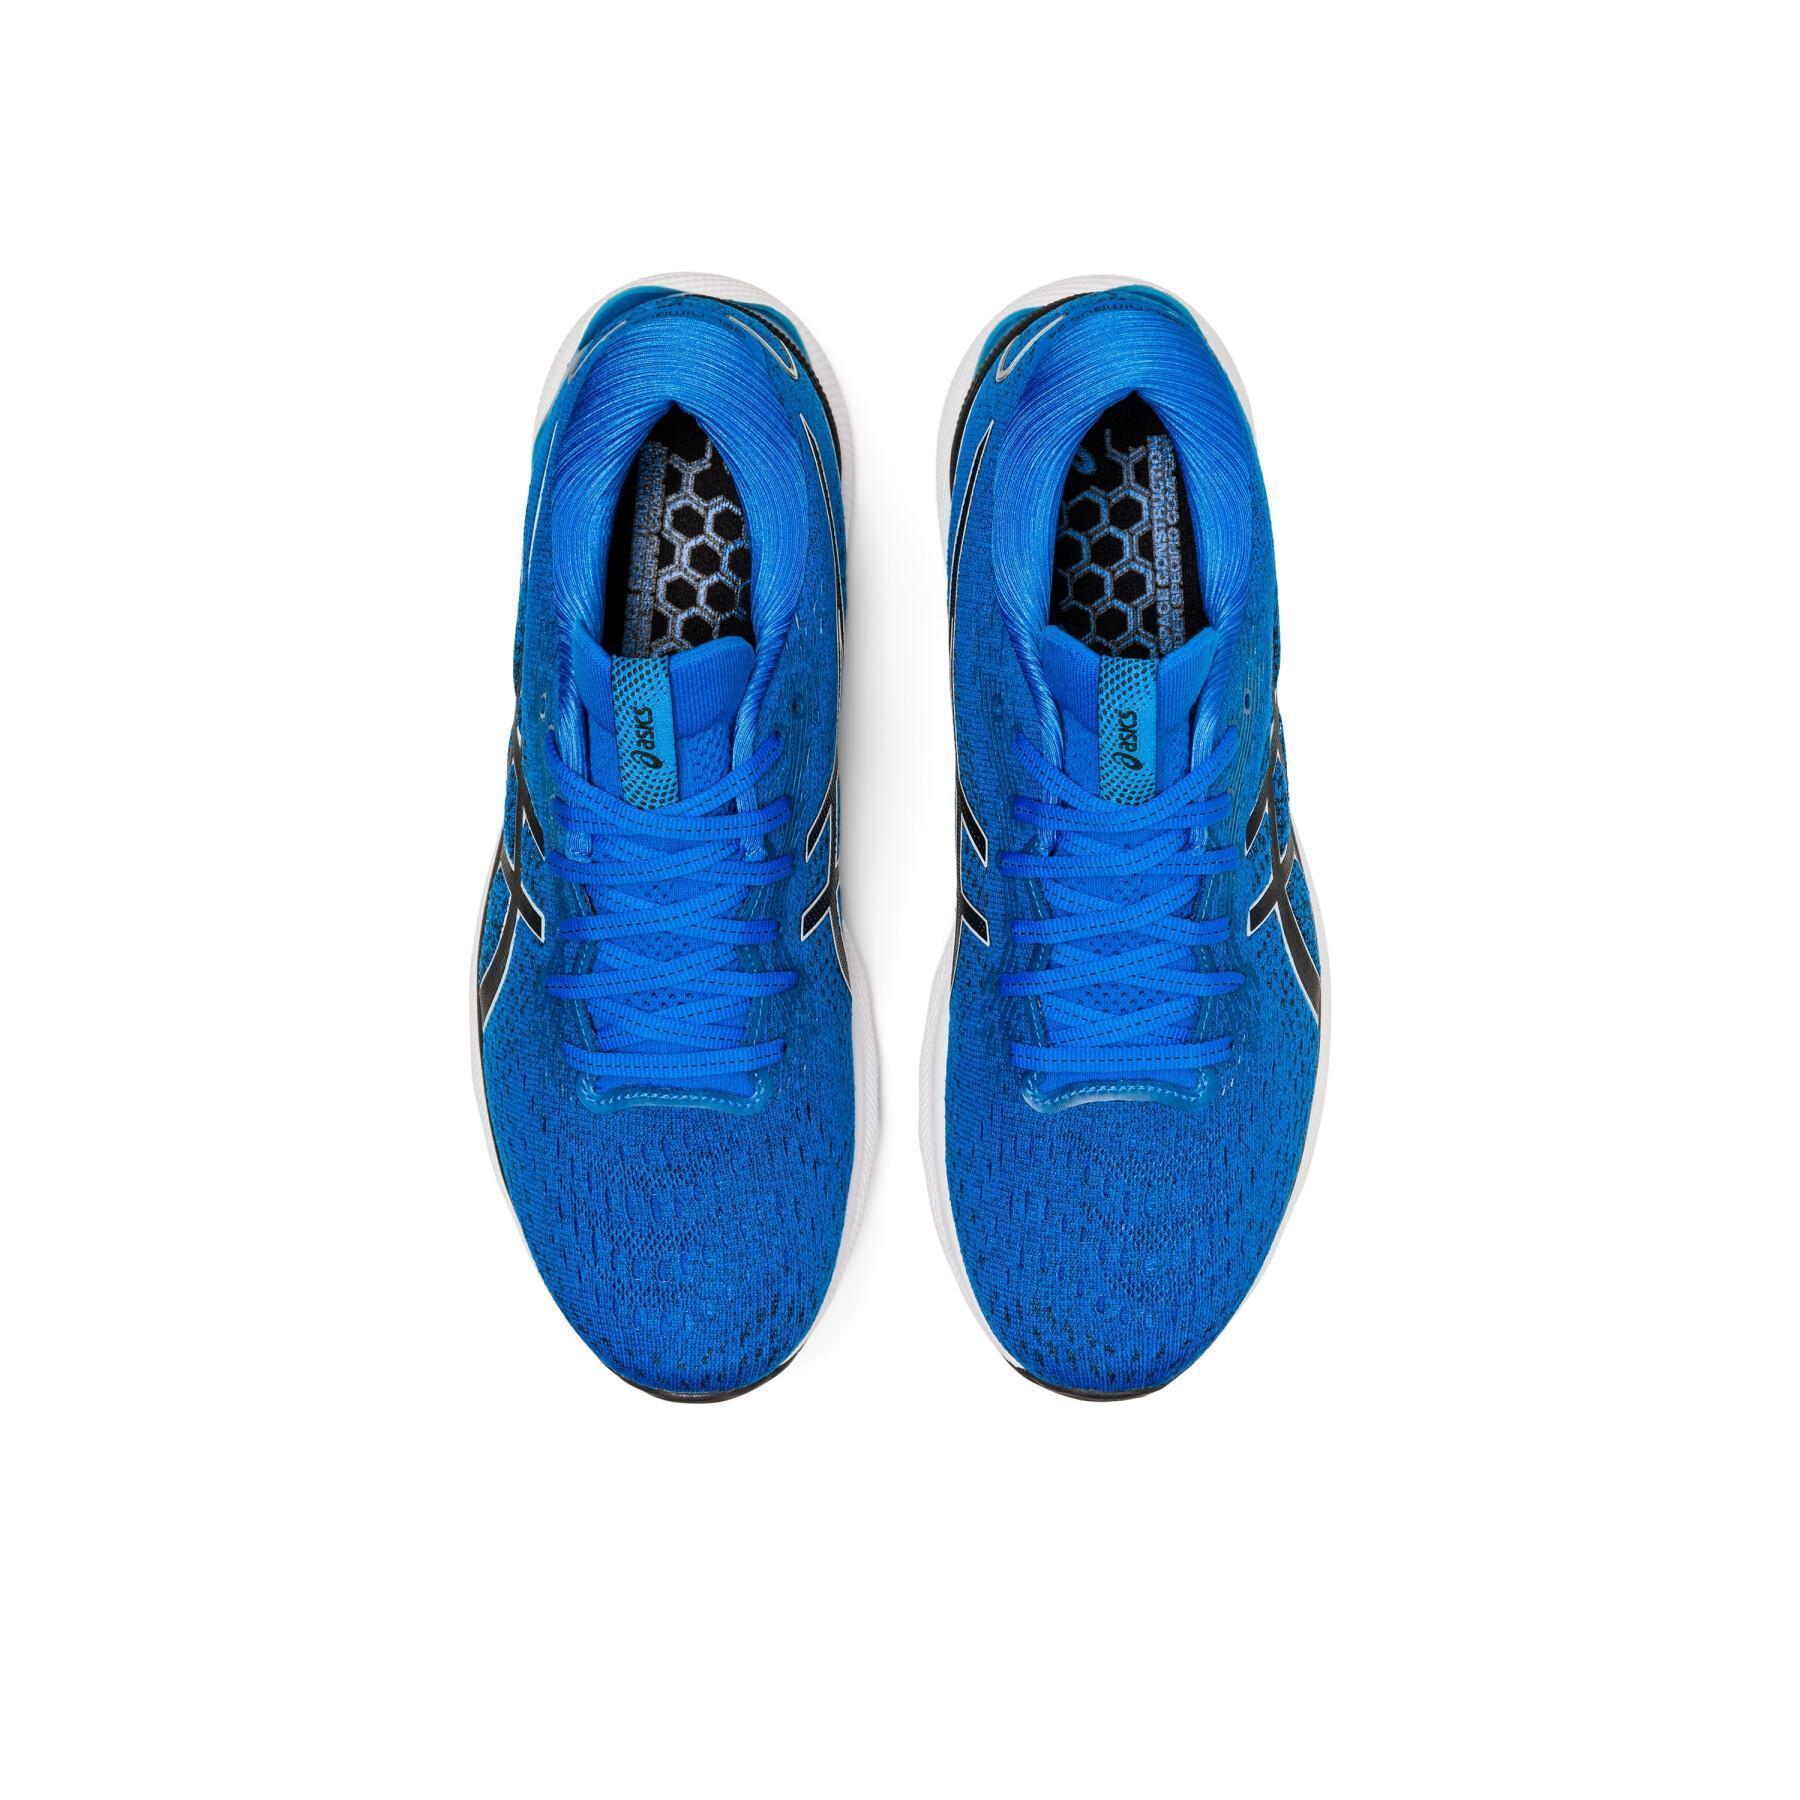 Running shoes Asics Gel-nimbus 24